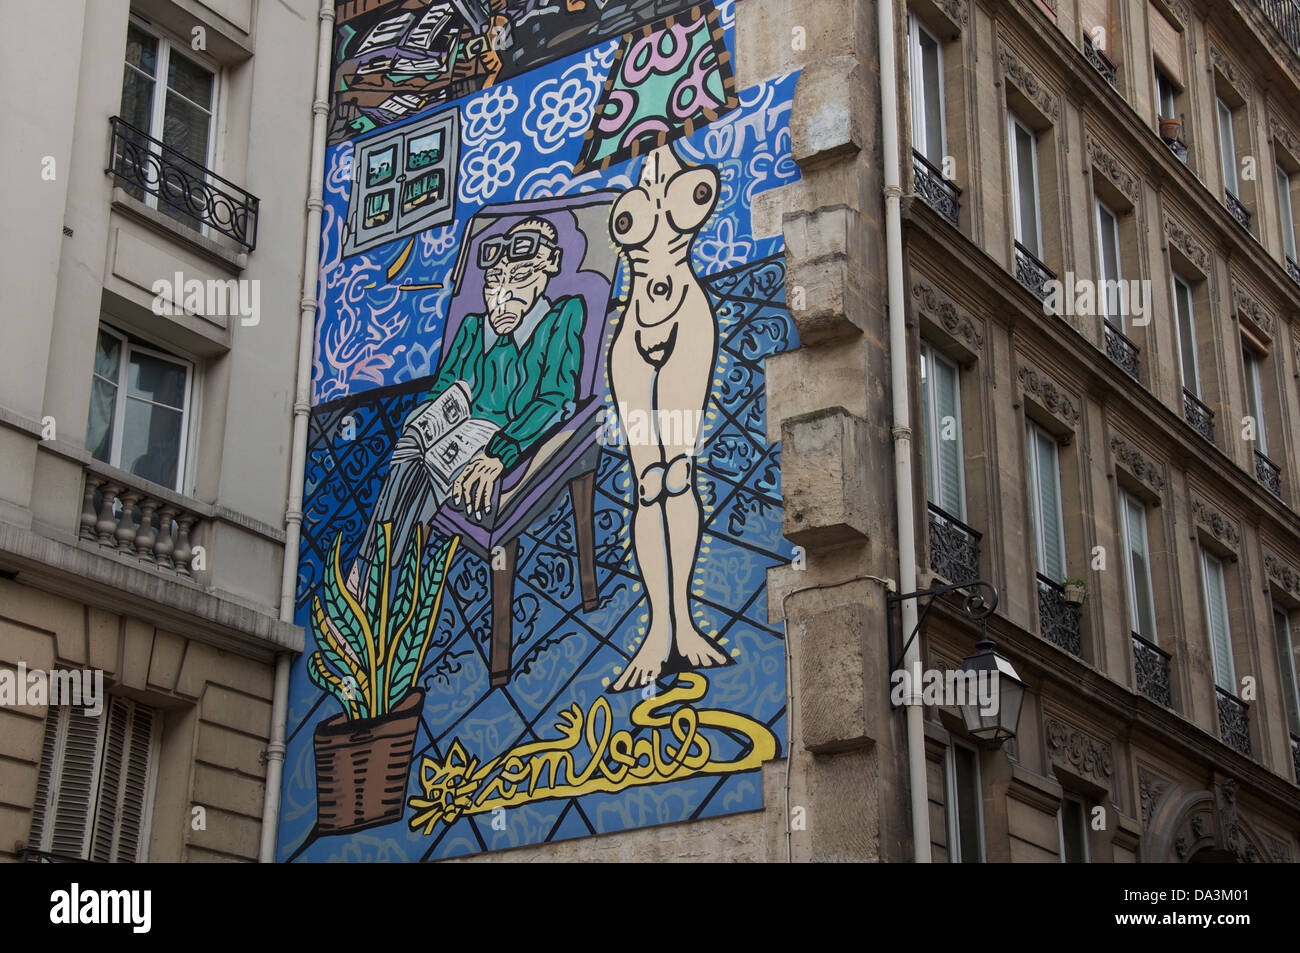 Parisian street art. La femme, la lumière de l’homme, Woman is the light of the man. A Mural by Robert Combas, in the Marais district of Paris. France. Stock Photo